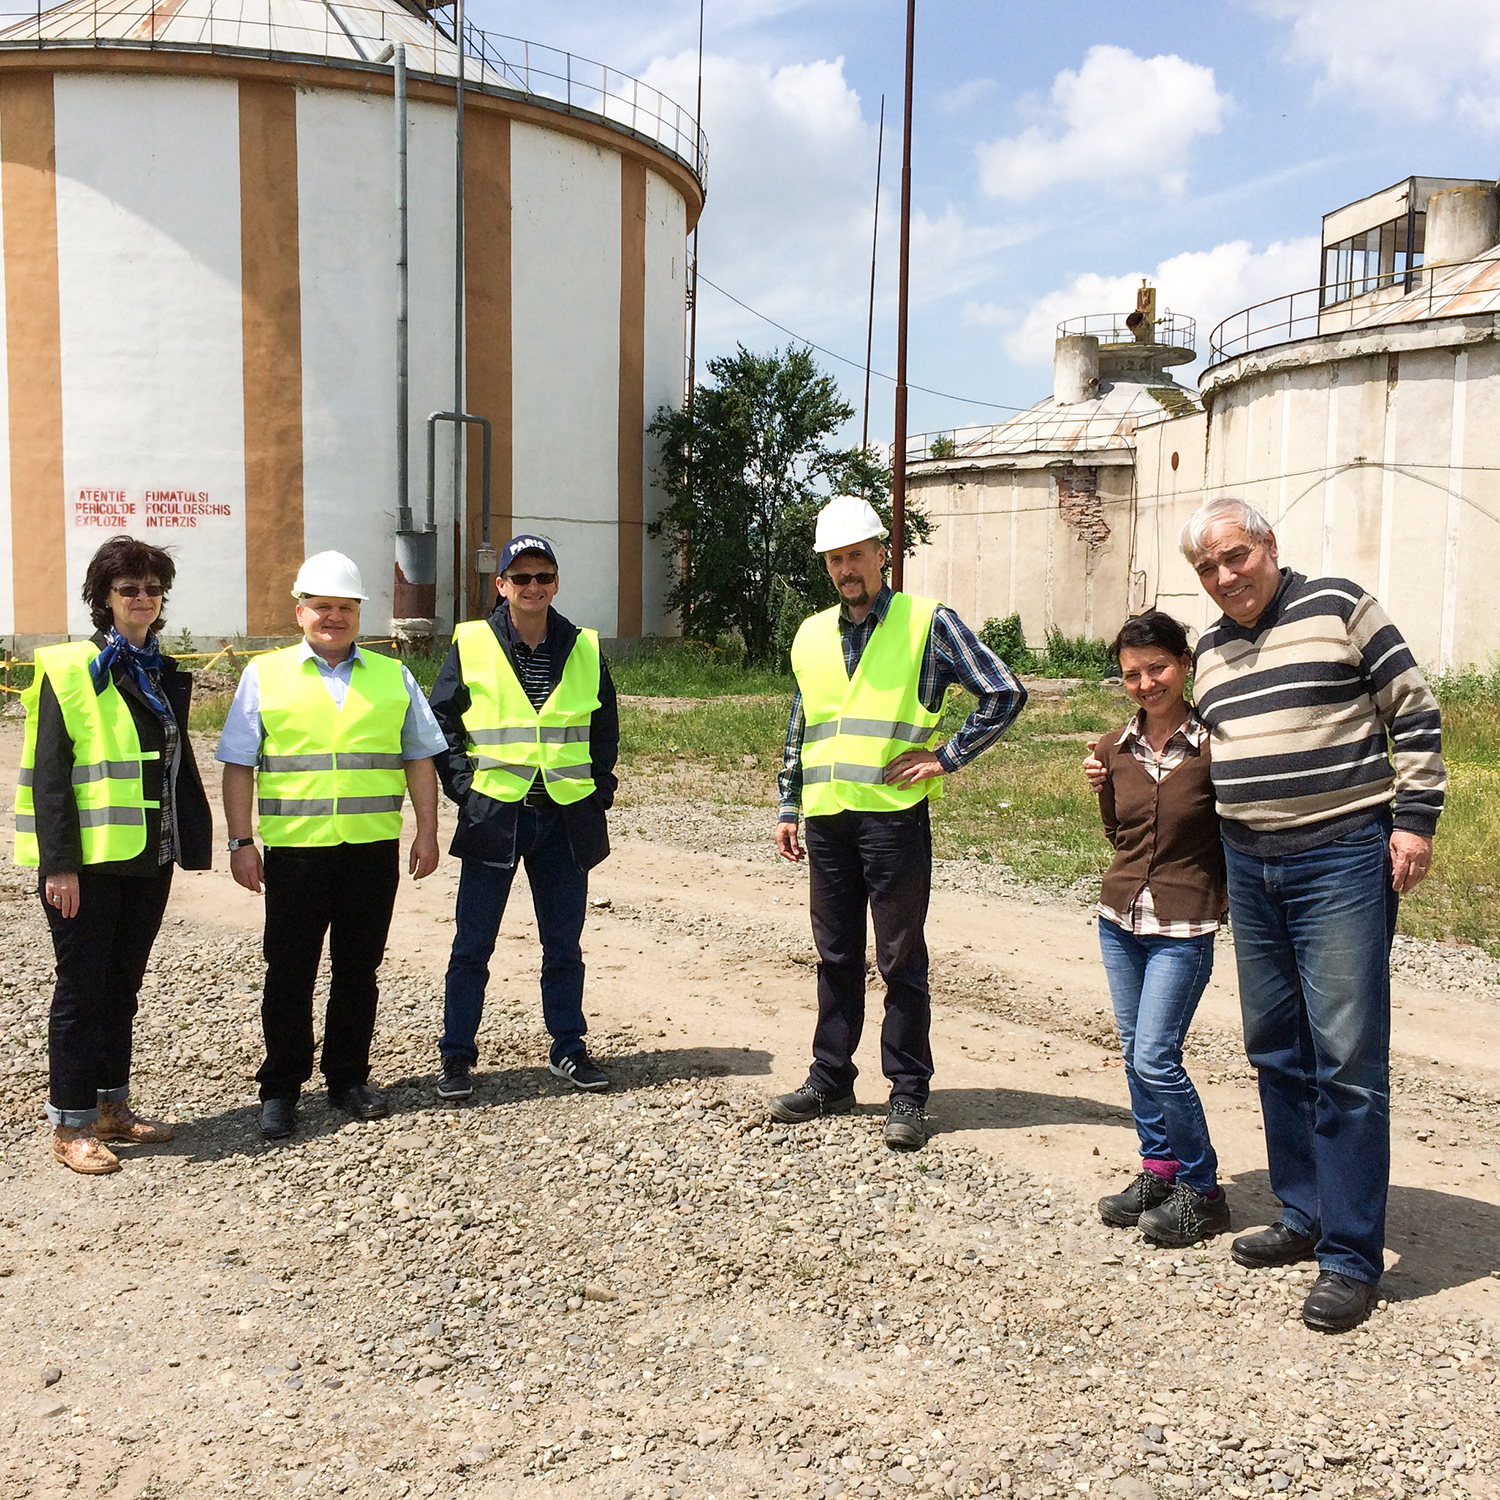 Der Kreis Mureş in Rumänien profitierte bei der Sanierung und Erweiterung seiner Kläranlage von der Beratung durch Experten der EIB. Das Projekt wurde mit sieben Millionen Euro aus EU-Mitteln für das sektorale operationelle Programm ‚Umwelt‘ gefördert und von der EIB unterstützt. 